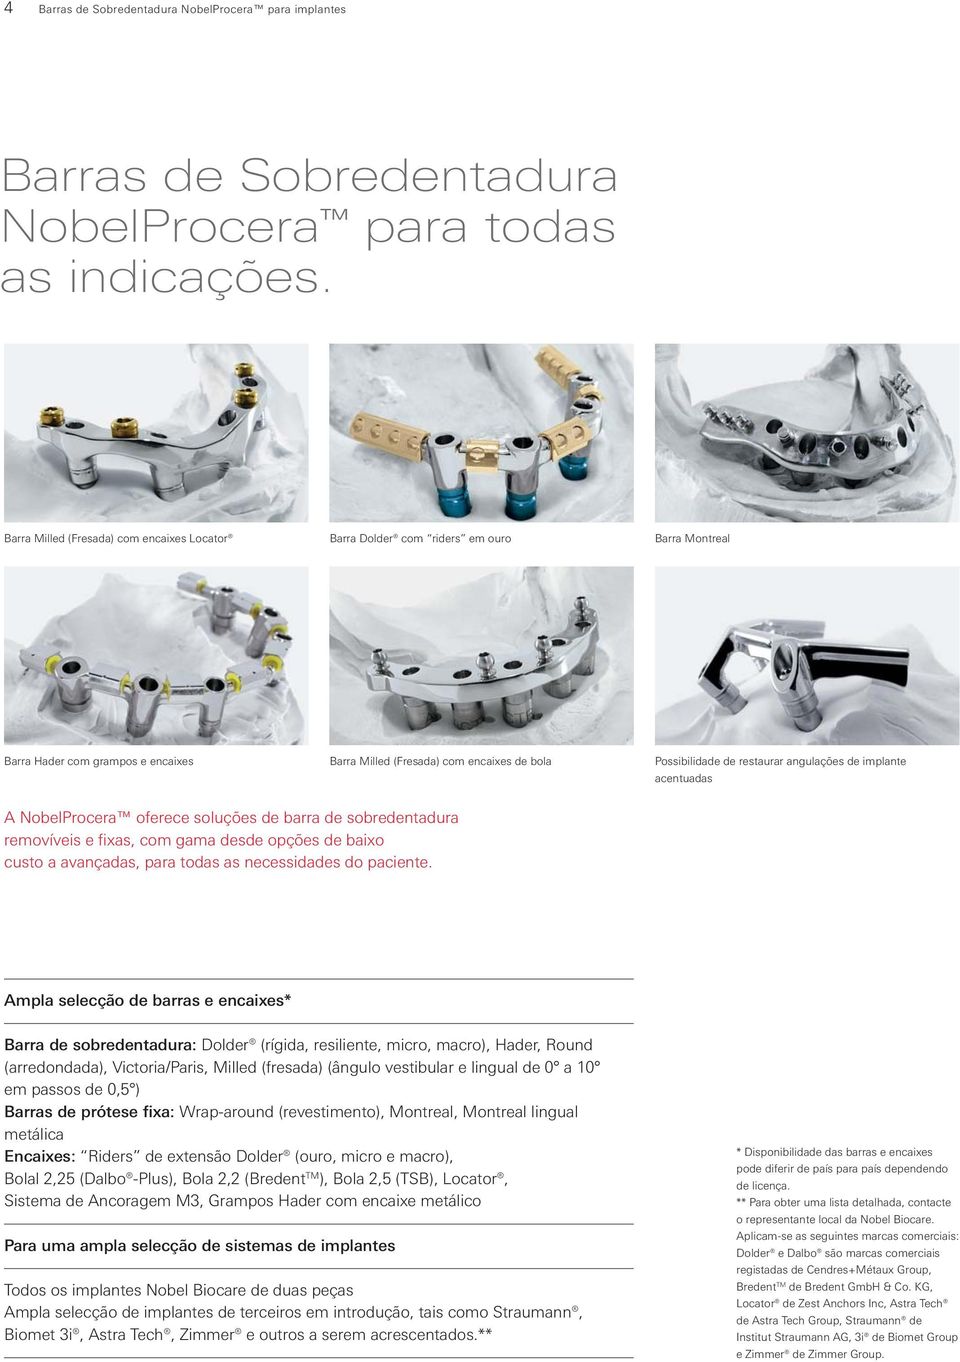 angulações de implante acentuadas A NobelProcera oferece soluções de barra de sobredentadura removíveis e fixas, com gama desde opções de baixo custo a avançadas, para todas as necessidades do